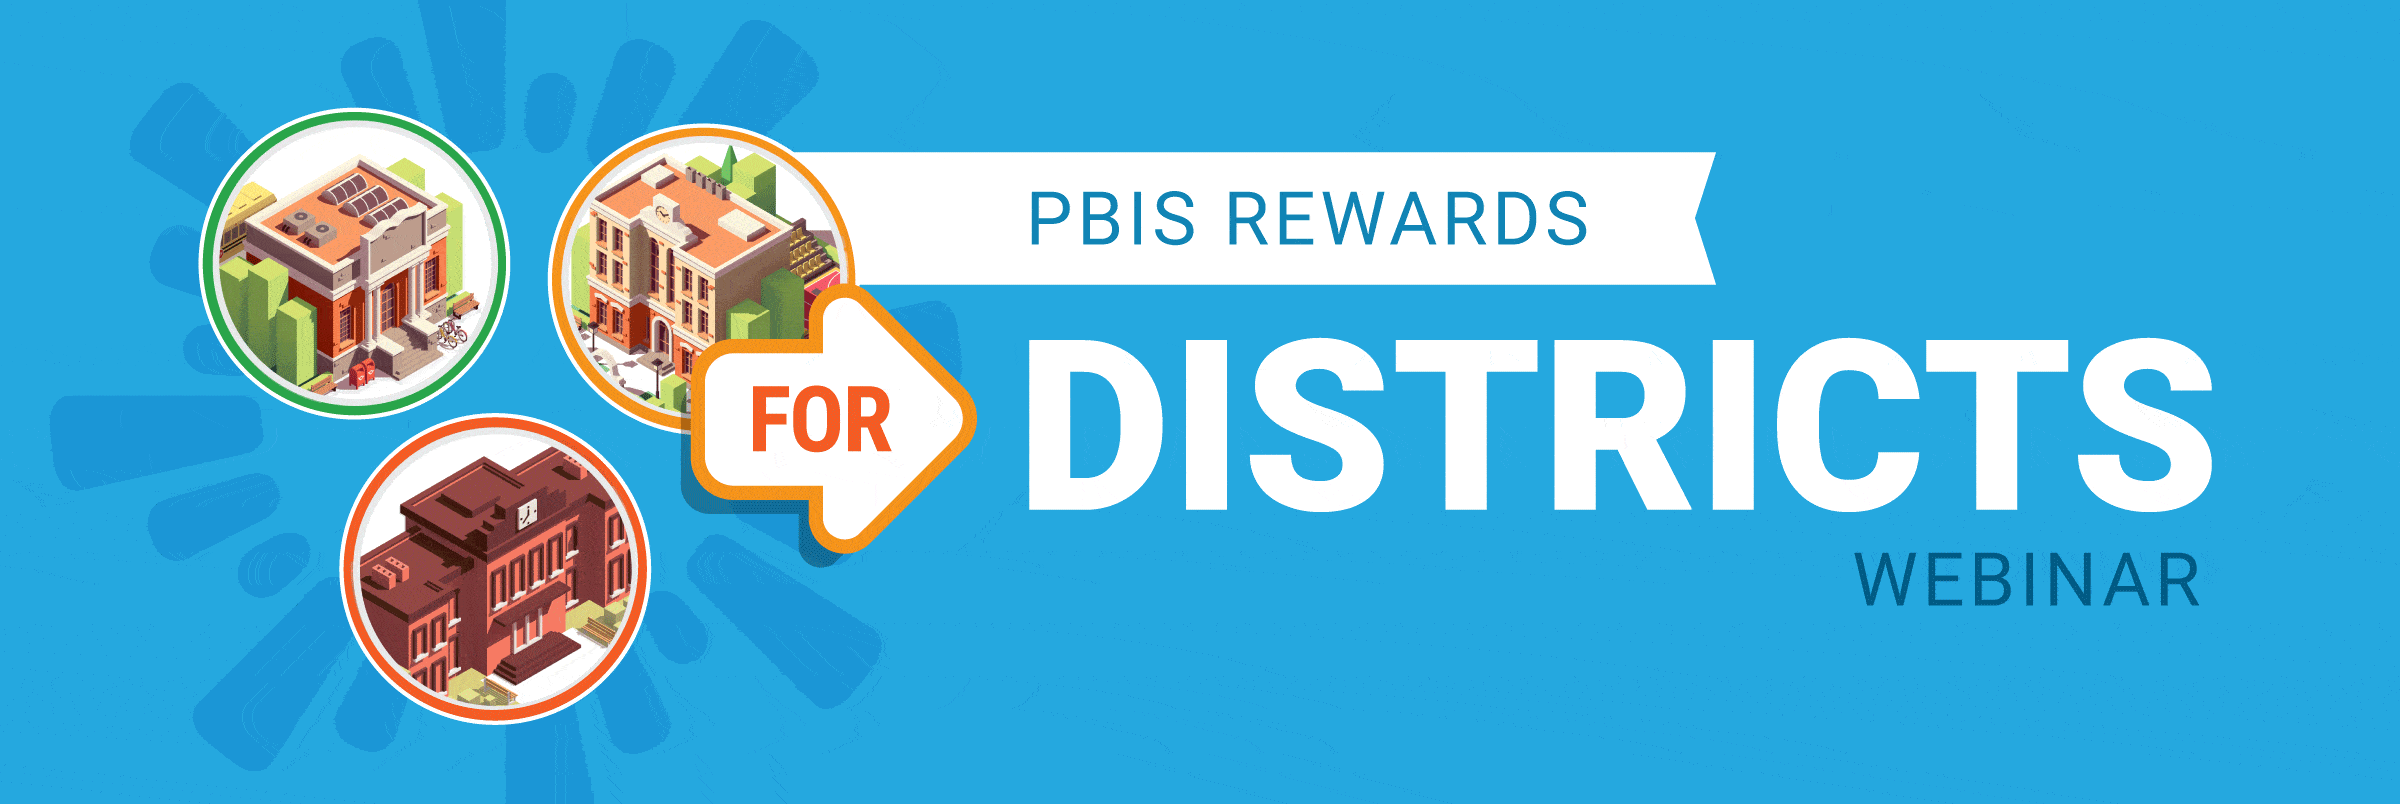 PBIS Rewards Flash Webinar - PBIS Rewards for Districts